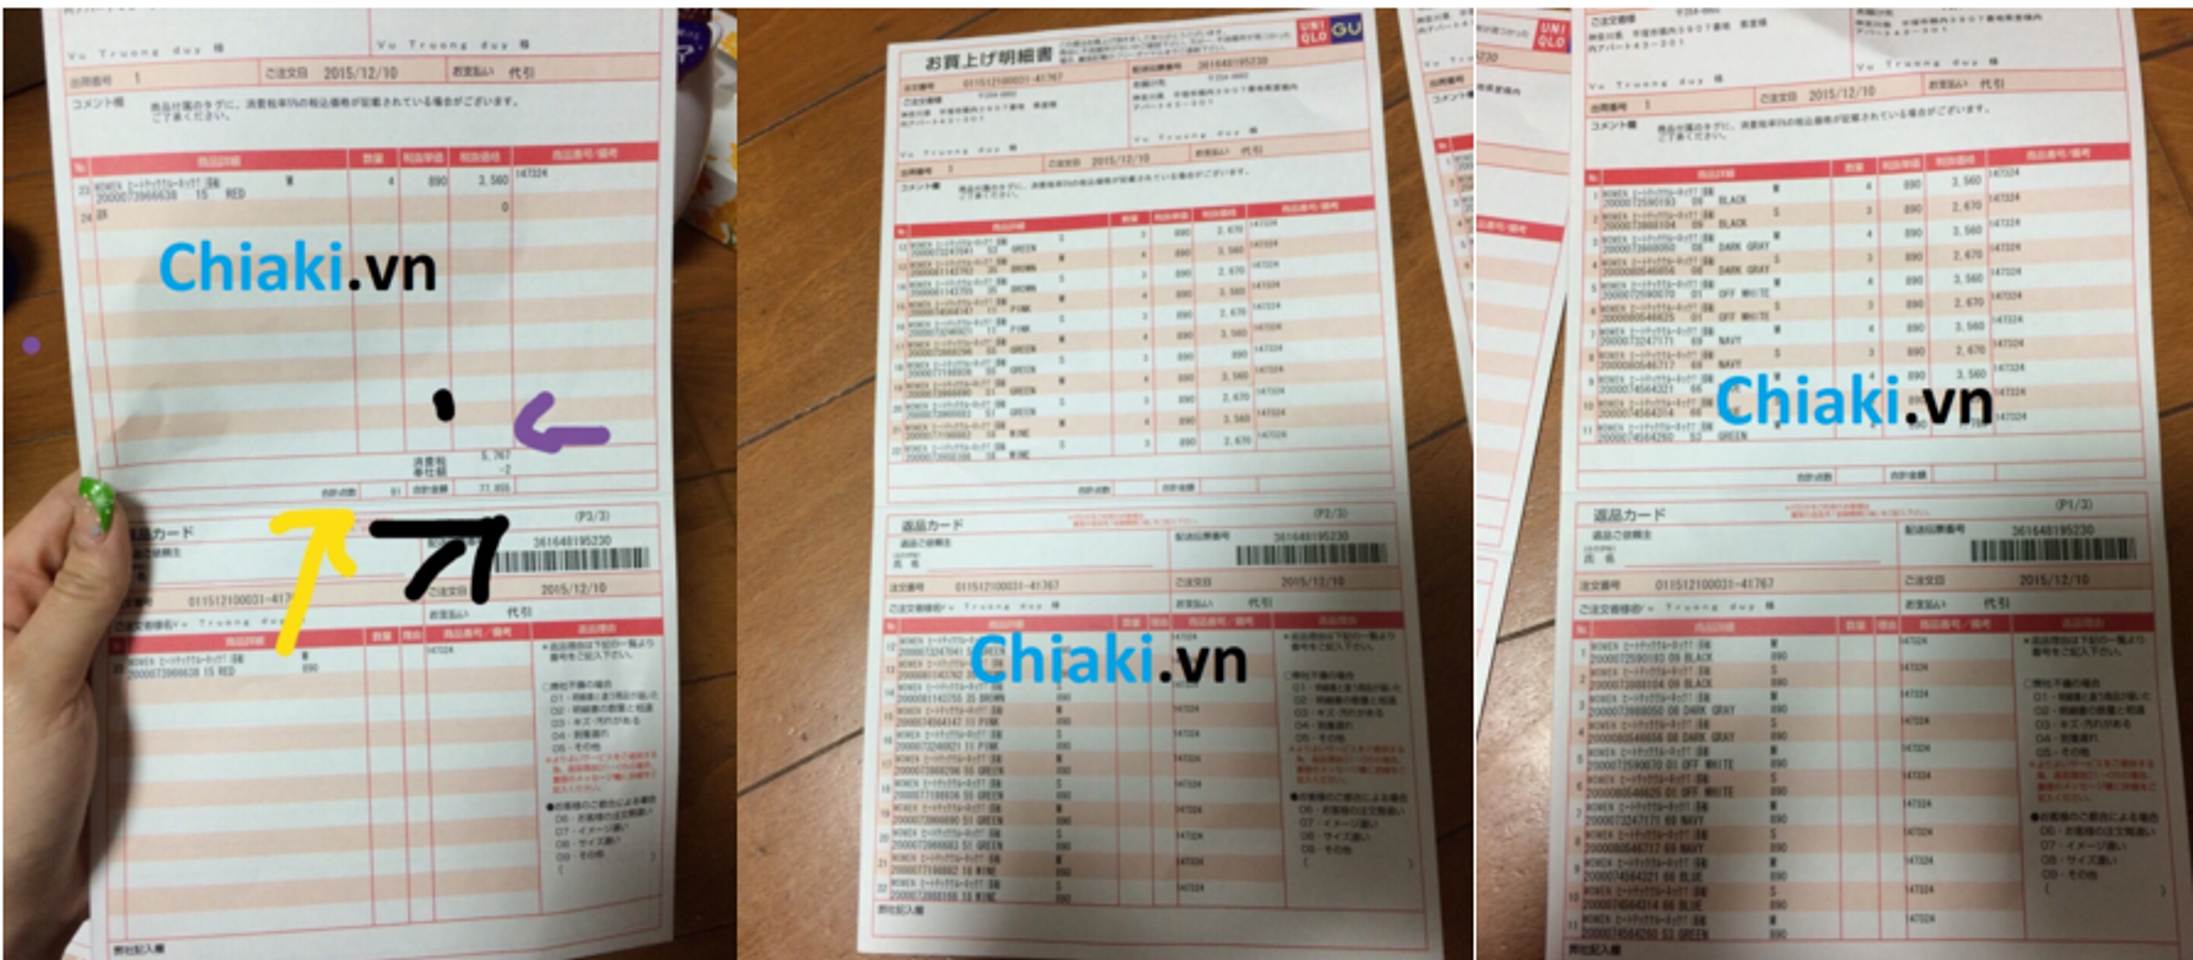 Chiaki.vn cam kết bán hàng Uniqlo chính hãng từ Nhật